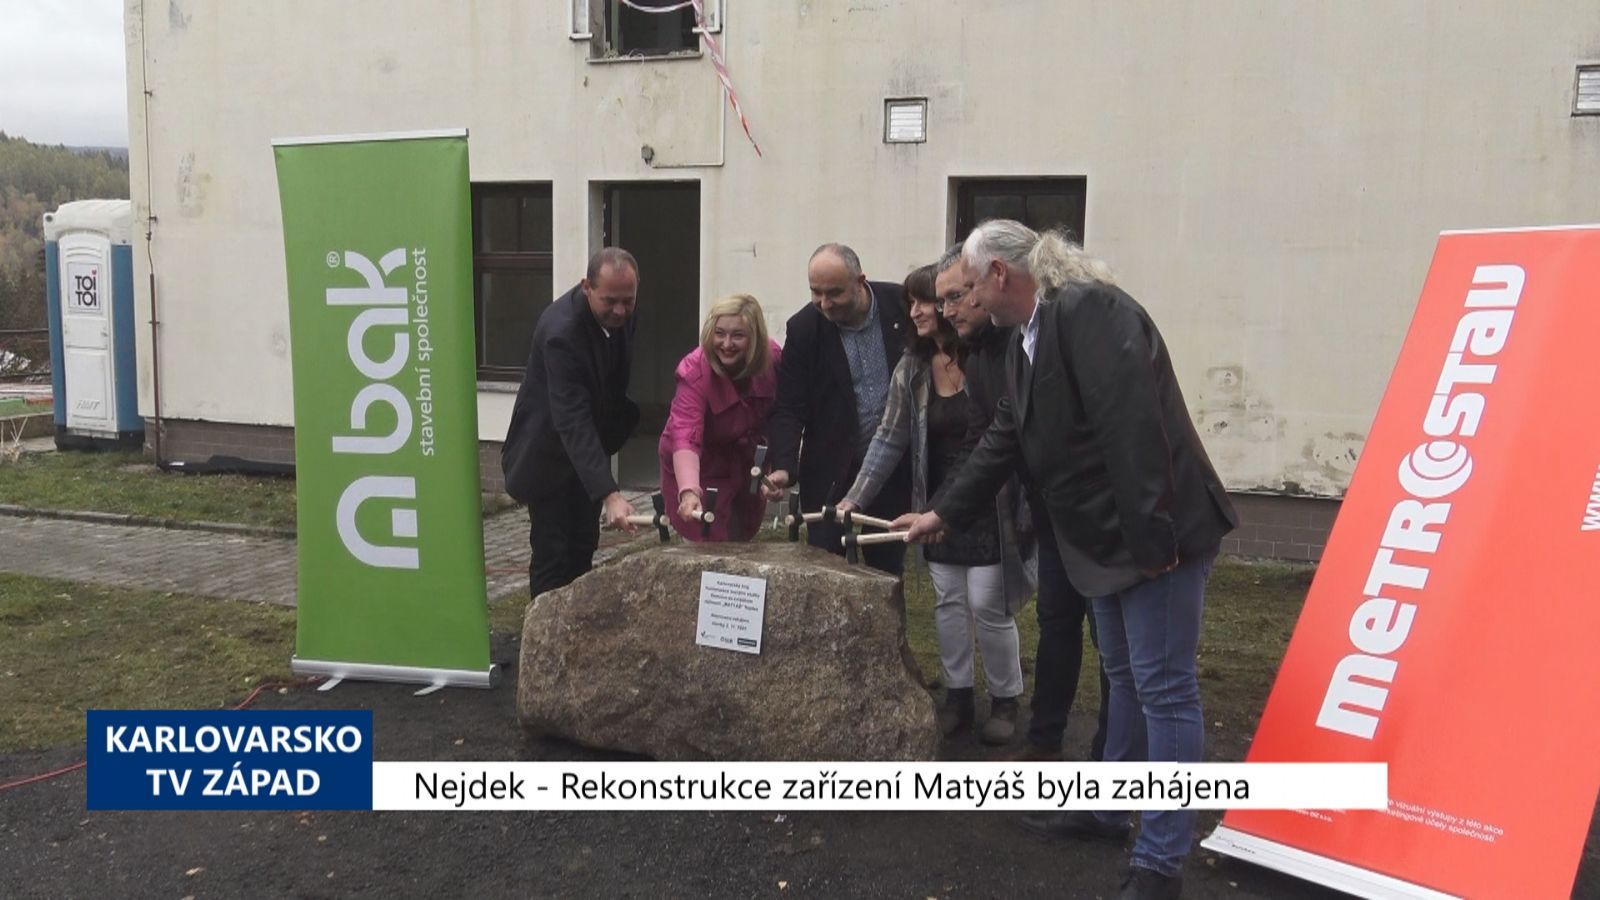 Nejdek: Rekonstrukce zařízení Matyáš byla zahájena (TV Západ)